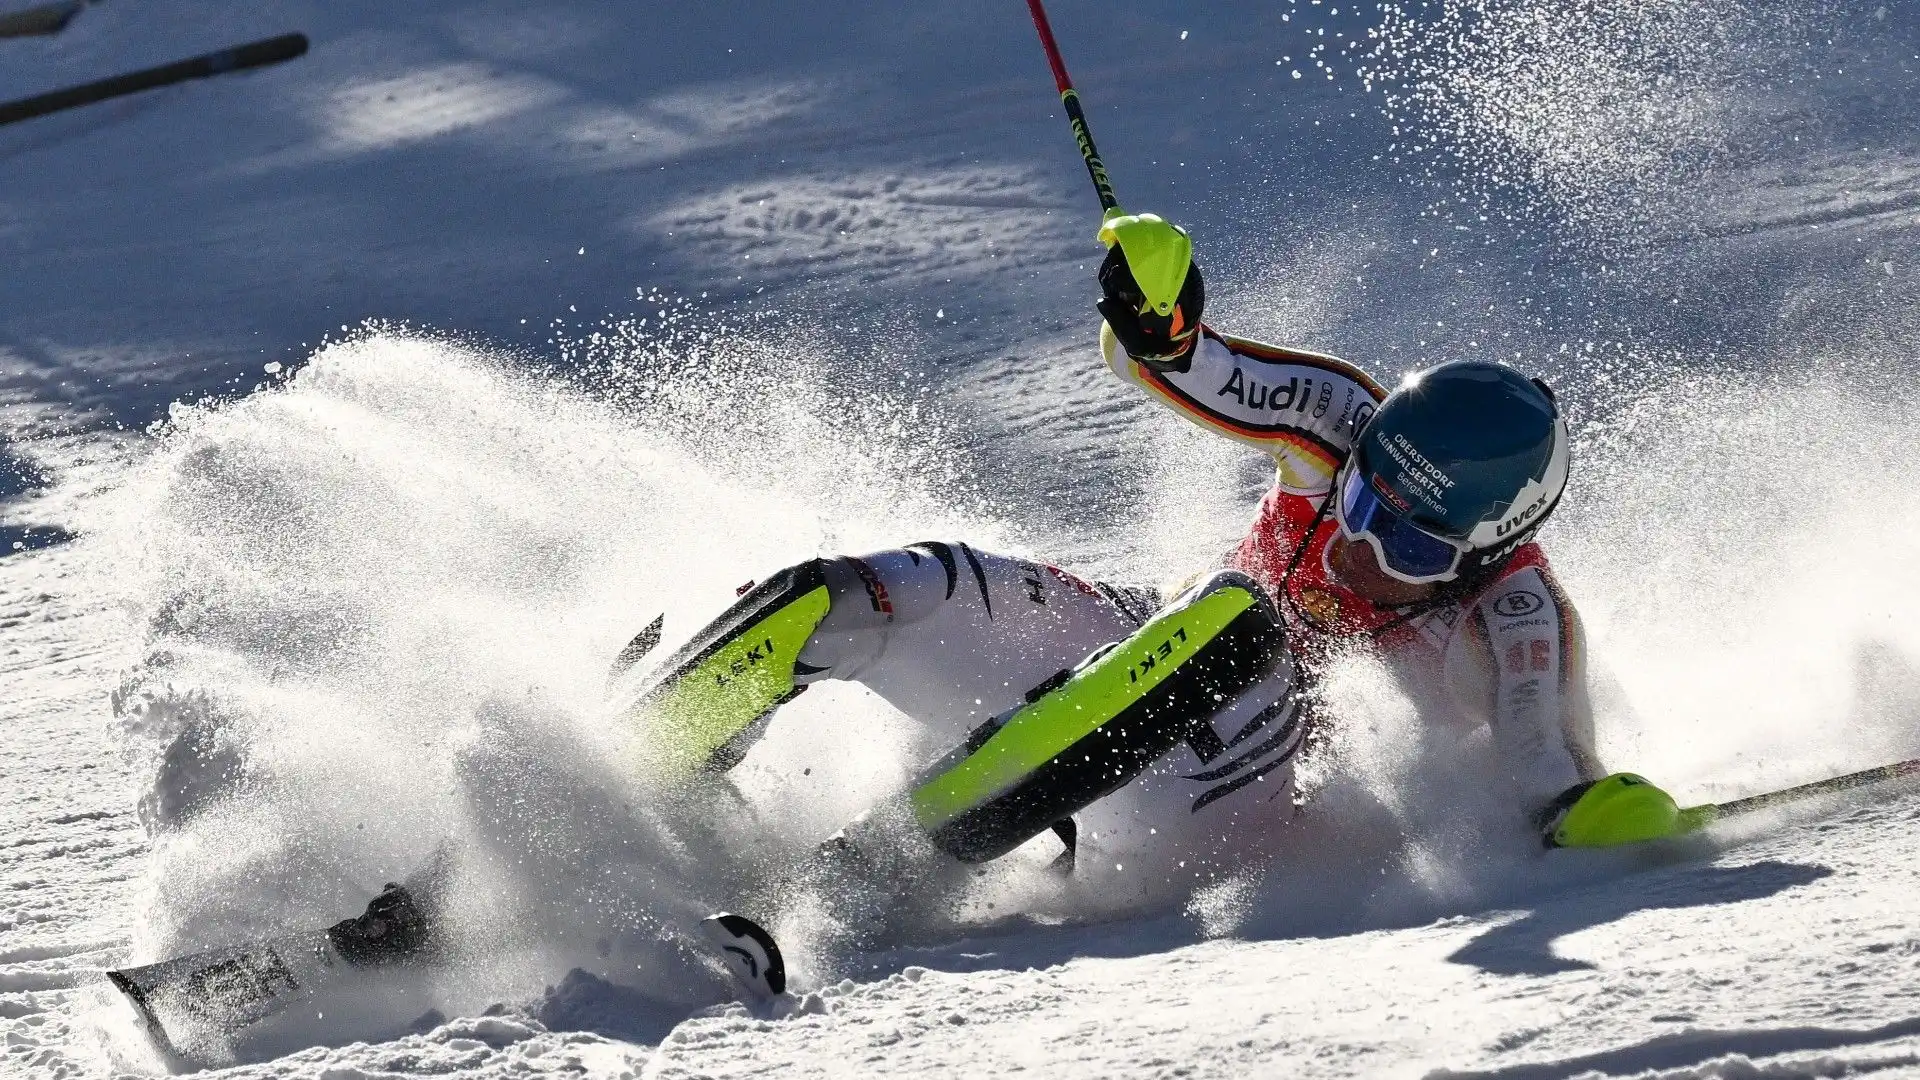 Grande paura per lo sciatore tedesco Alexander Schmid